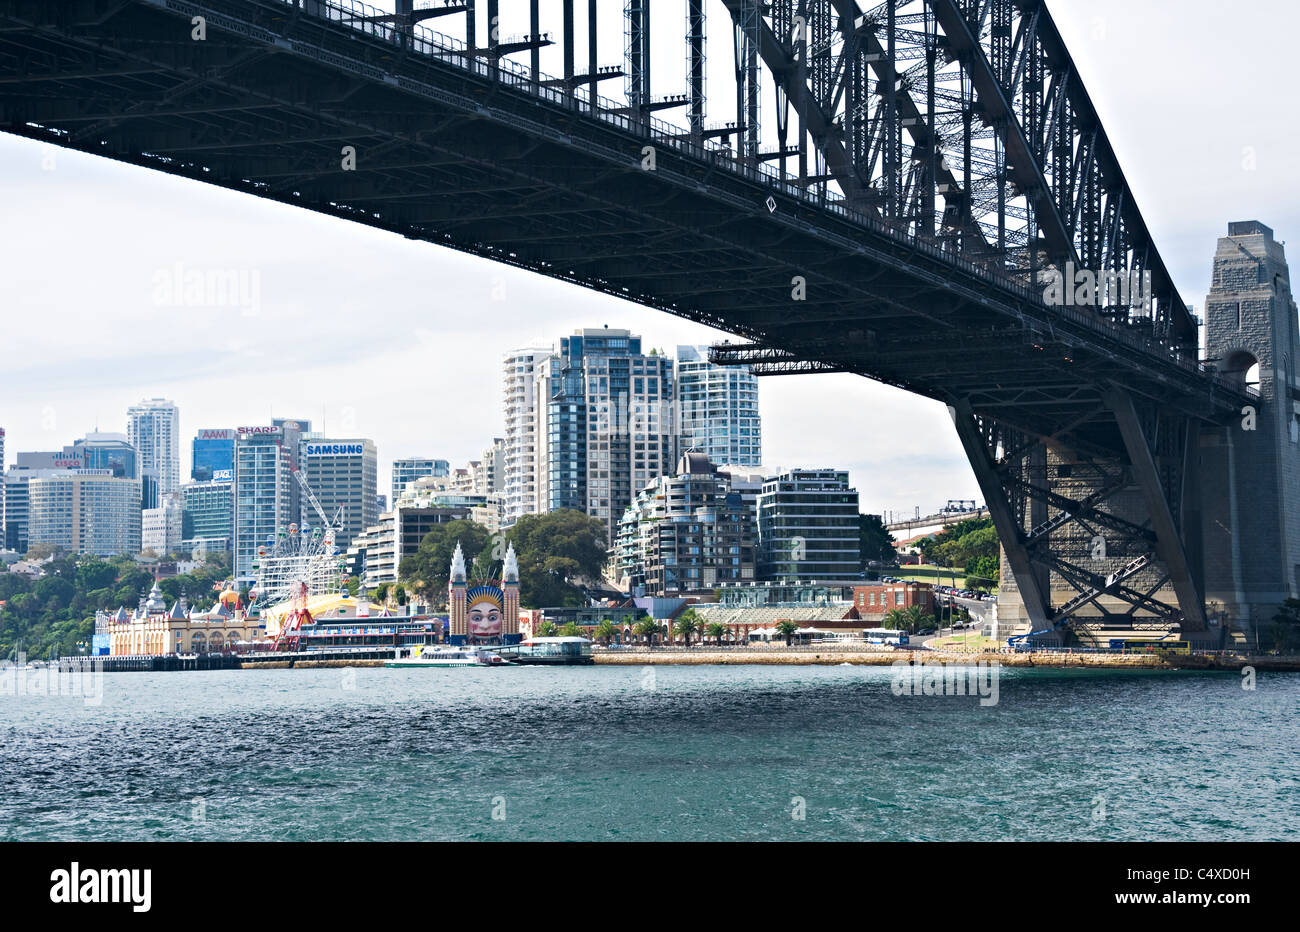 Le beau pont de Sydney s'étend sur plus de Port Jackson dans la ville de Sydney New South Wales Australie Banque D'Images